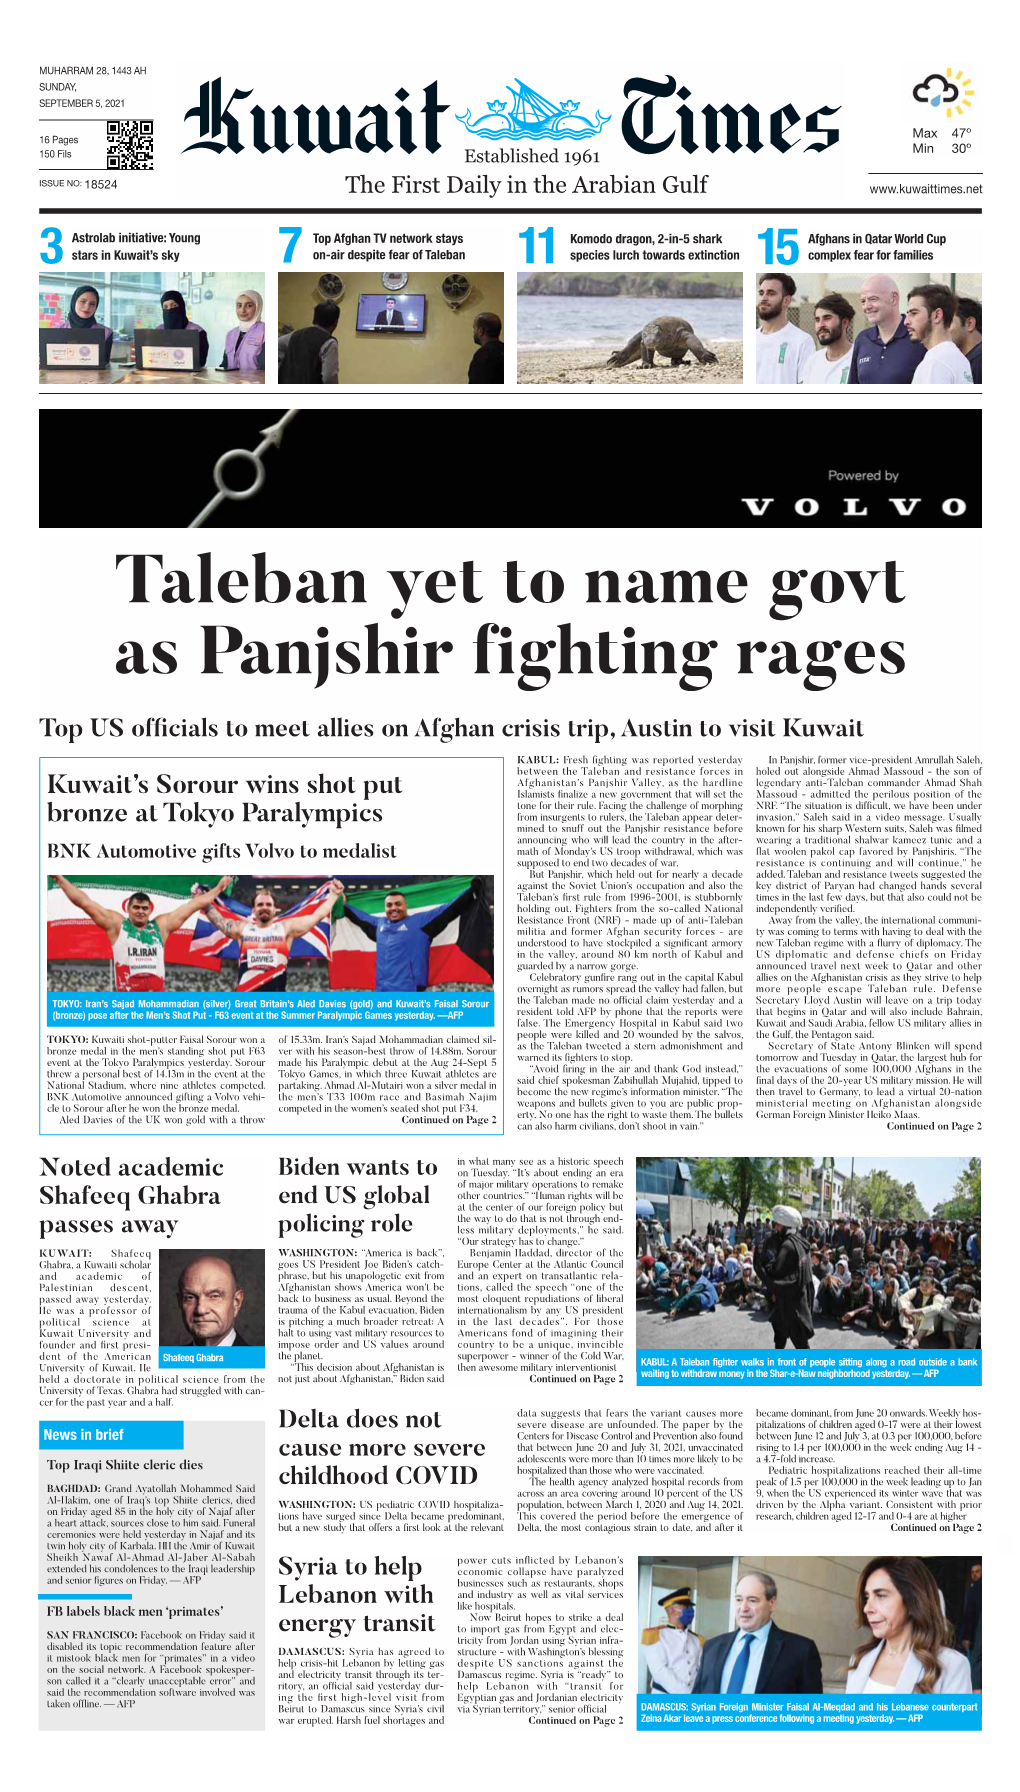 Taleban Yet to Name Govt As Panjshir Fighting Rages